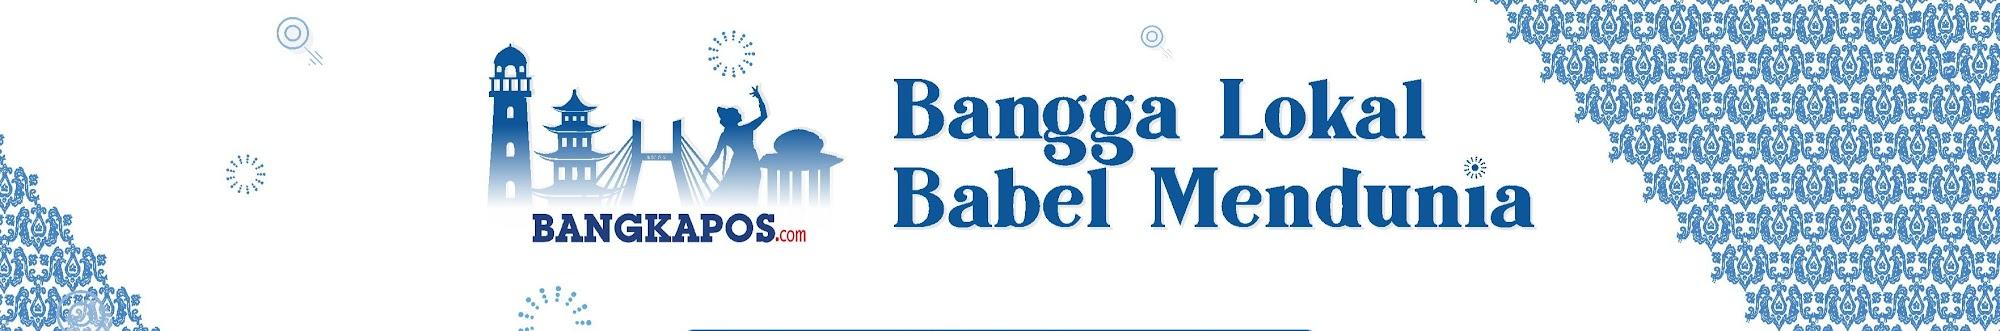 Bangka Pos Official